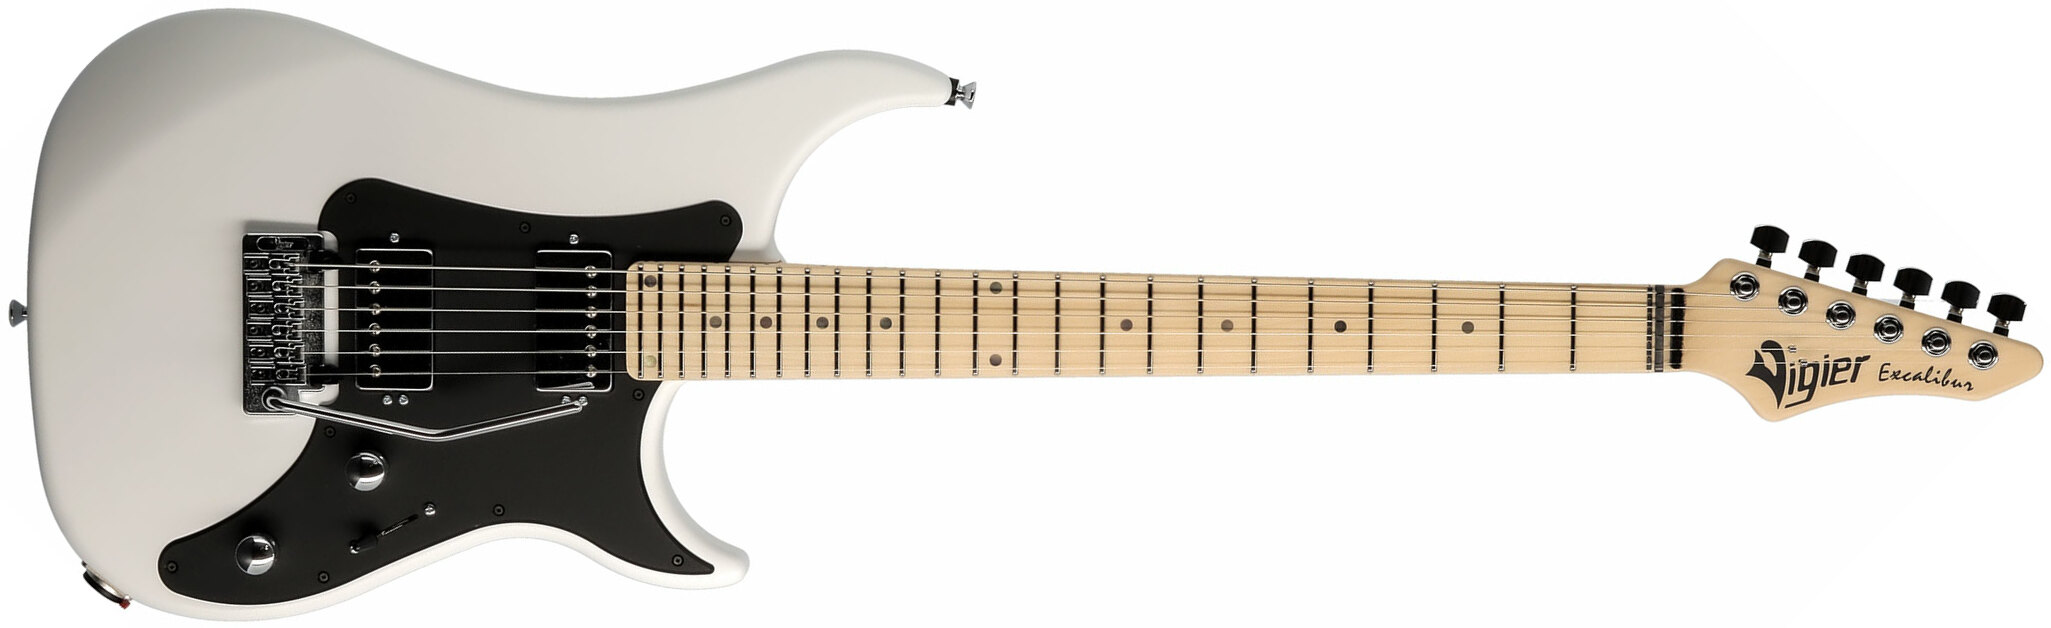 Vigier Excalibur Indus Hh Trem Mn - White - Double cut electric guitar - Main picture